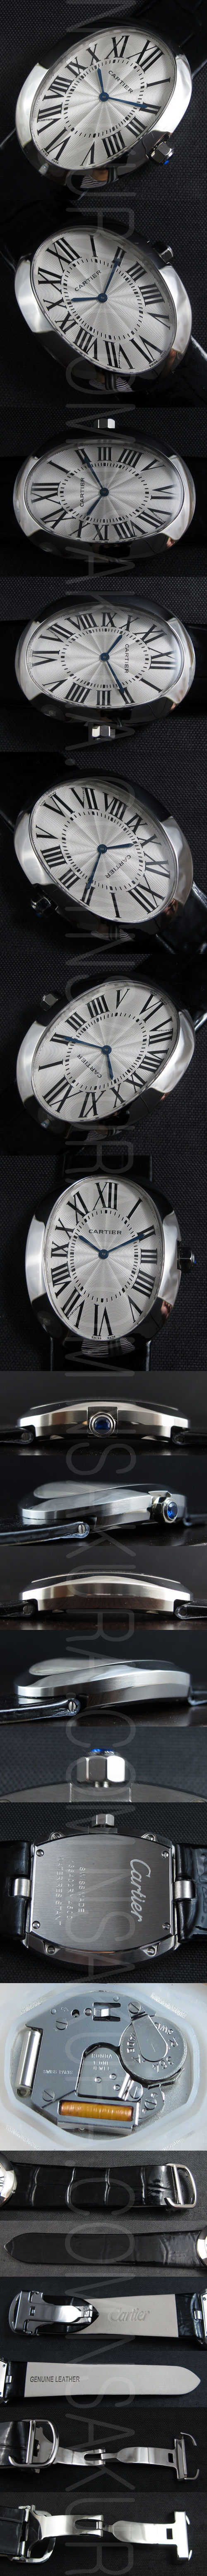 レプリカ時計カルティエ ベニュワール クォーツムーブメント搭載 - ウインドウを閉じる